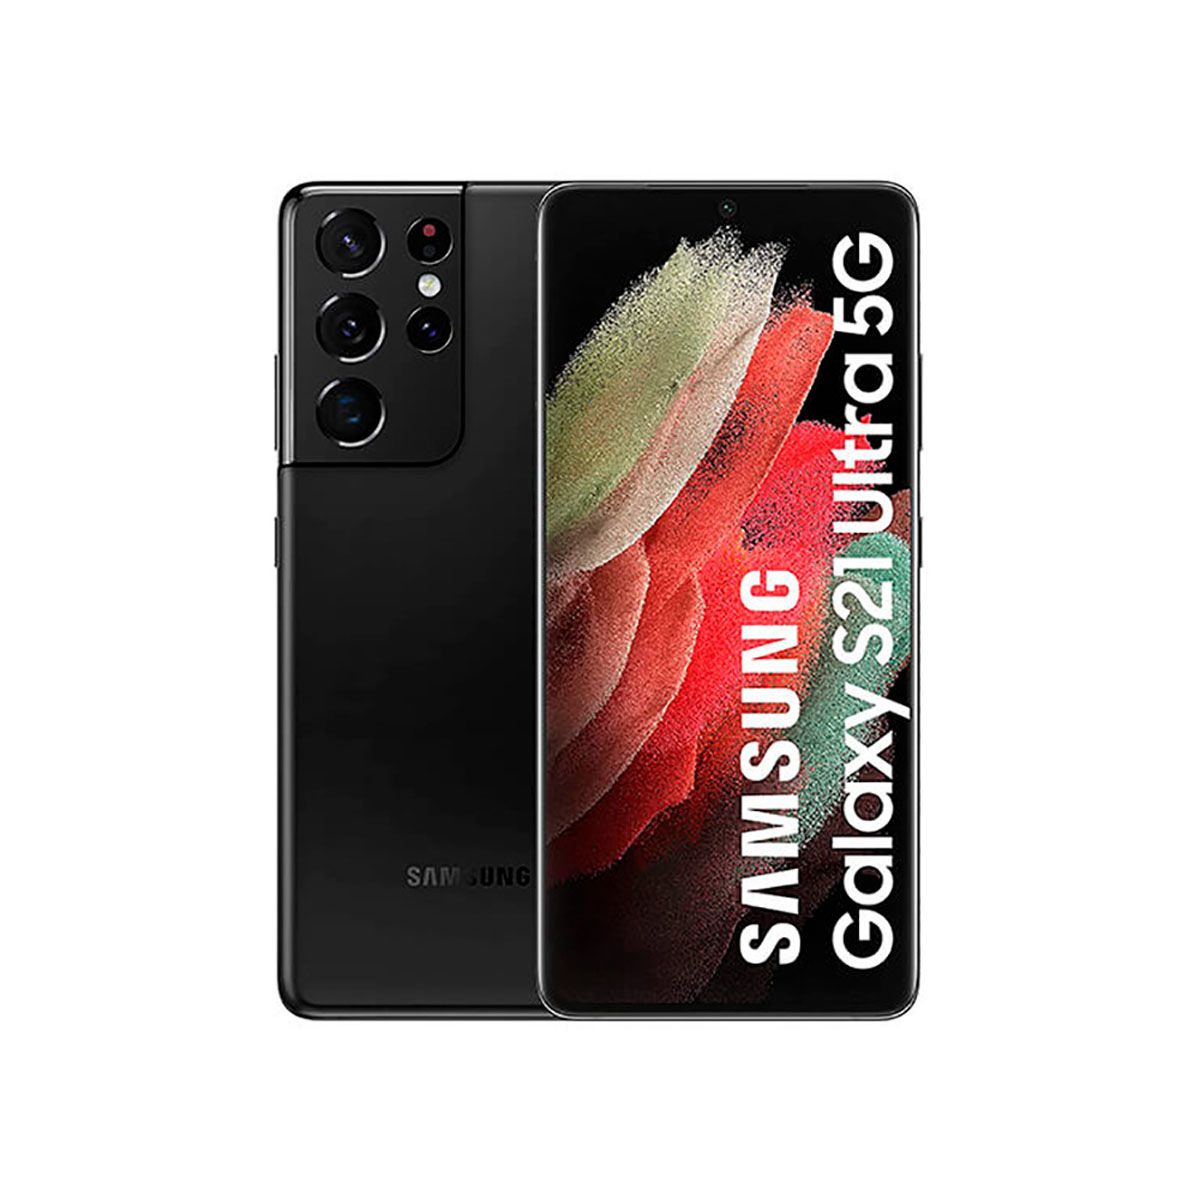 Samsung Galaxy S21 Ultra 5G 12 Go/128 Go Noir (Noir fantôme) Double SIM G998